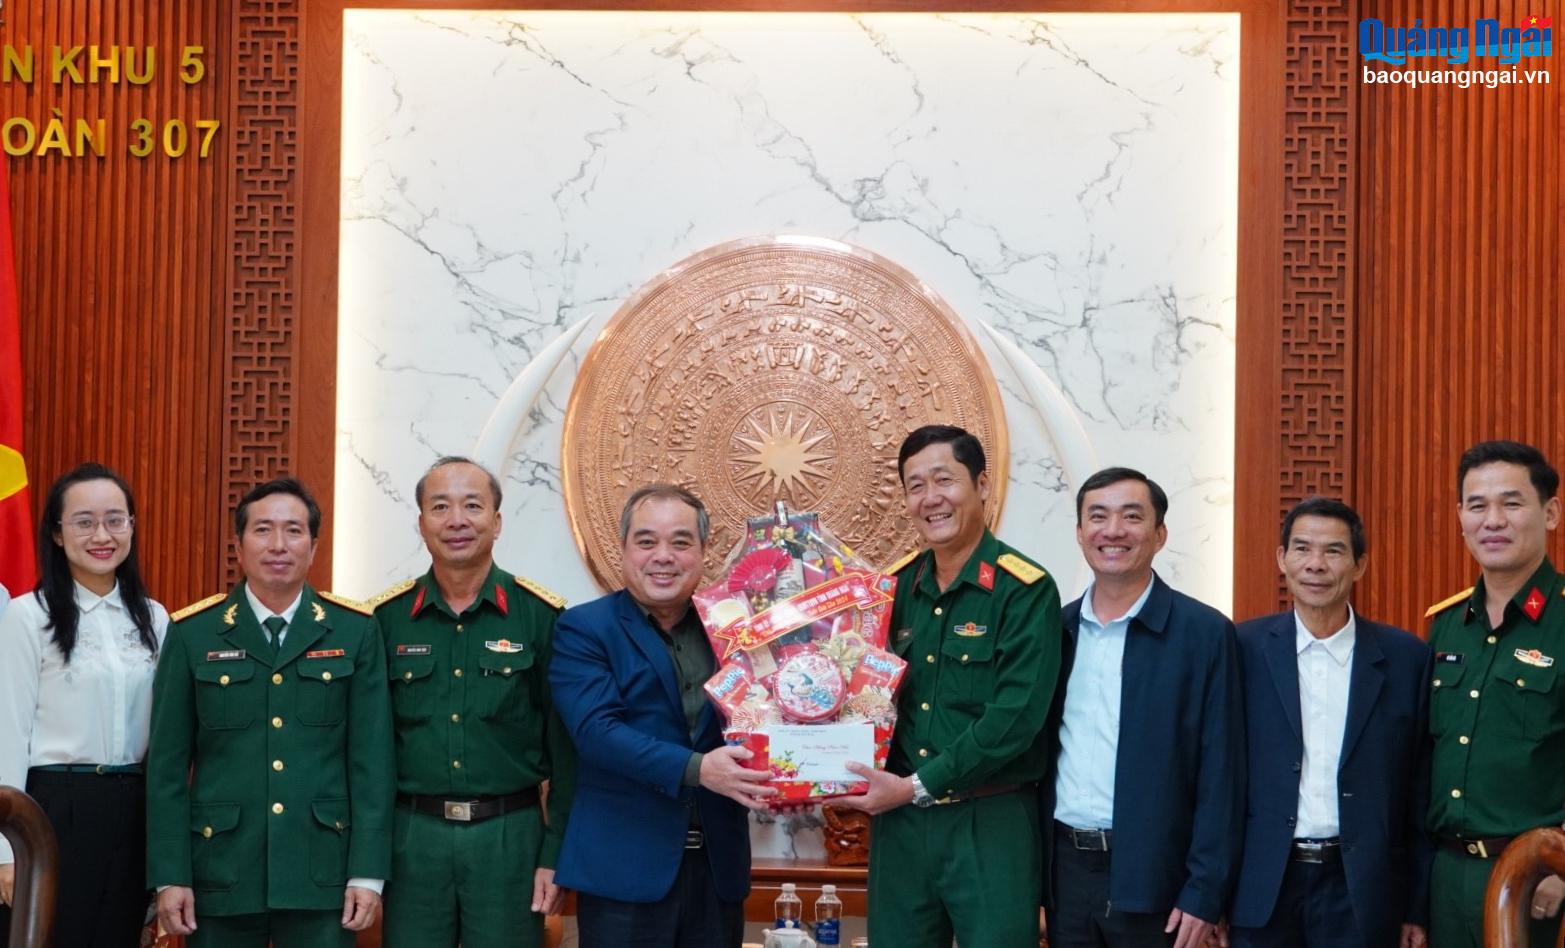 Phó Chủ tịch Thường trực UBND tỉnh Trần Hoàng Tuấn thăm, chúc Tết Sư đoàn 307 và tặng quà nạn nhân chất độc da cam